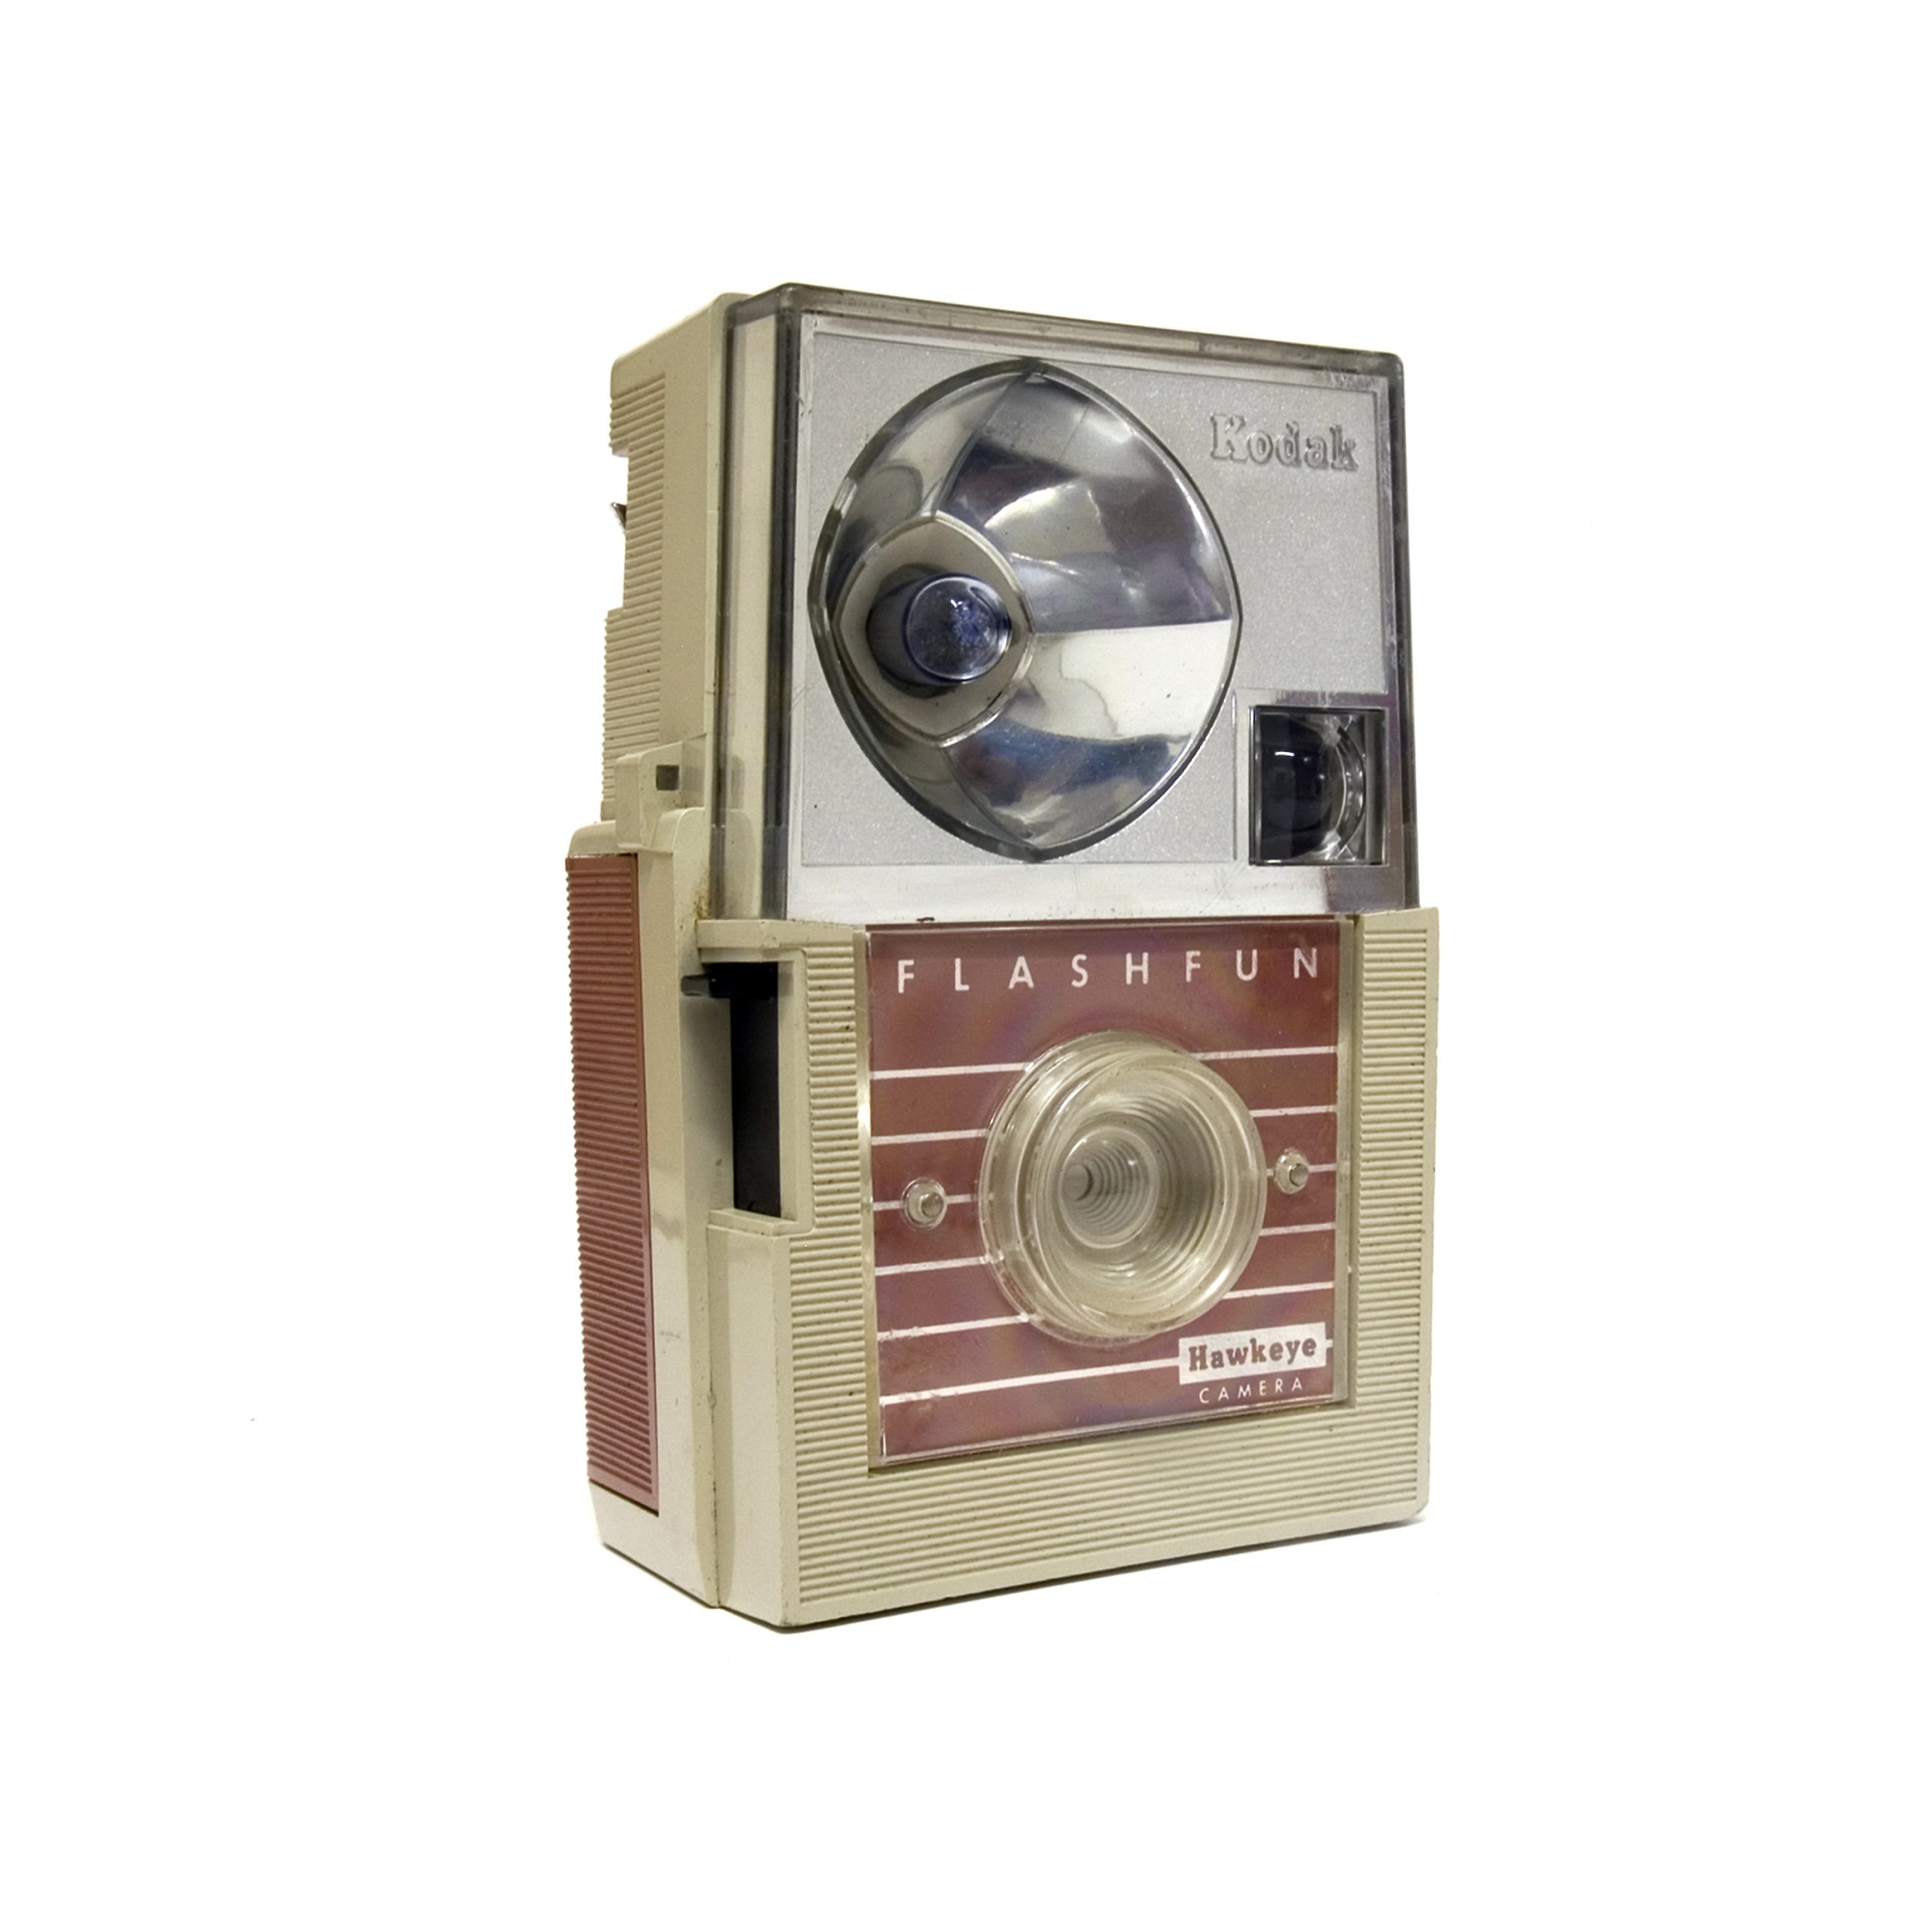 Cámara de baquelita Kodak FlashFun fabricada entre los años 1961-69.